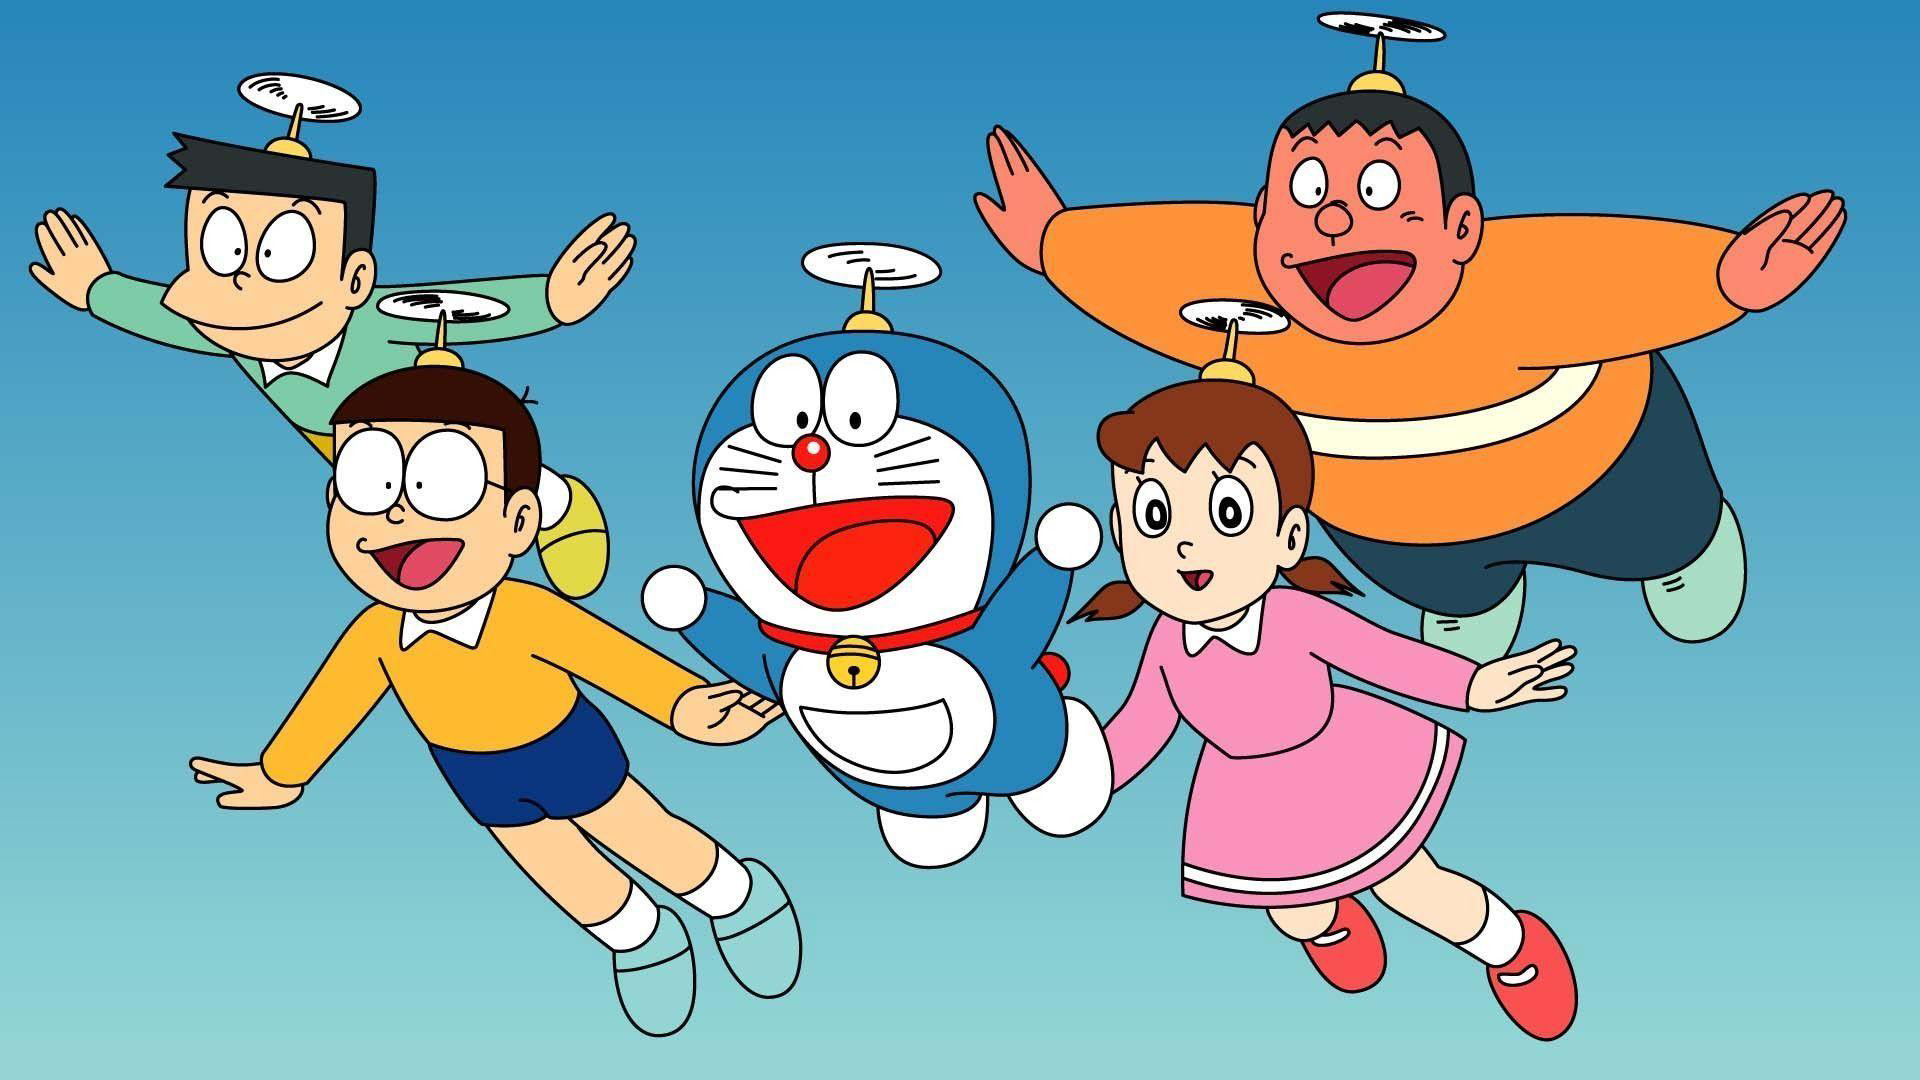 Nobita Nobi Doraemon Shizuka Minamoto Takeshi Goda Suneo Honekawa In Sky Wallpaper HD Cartoon